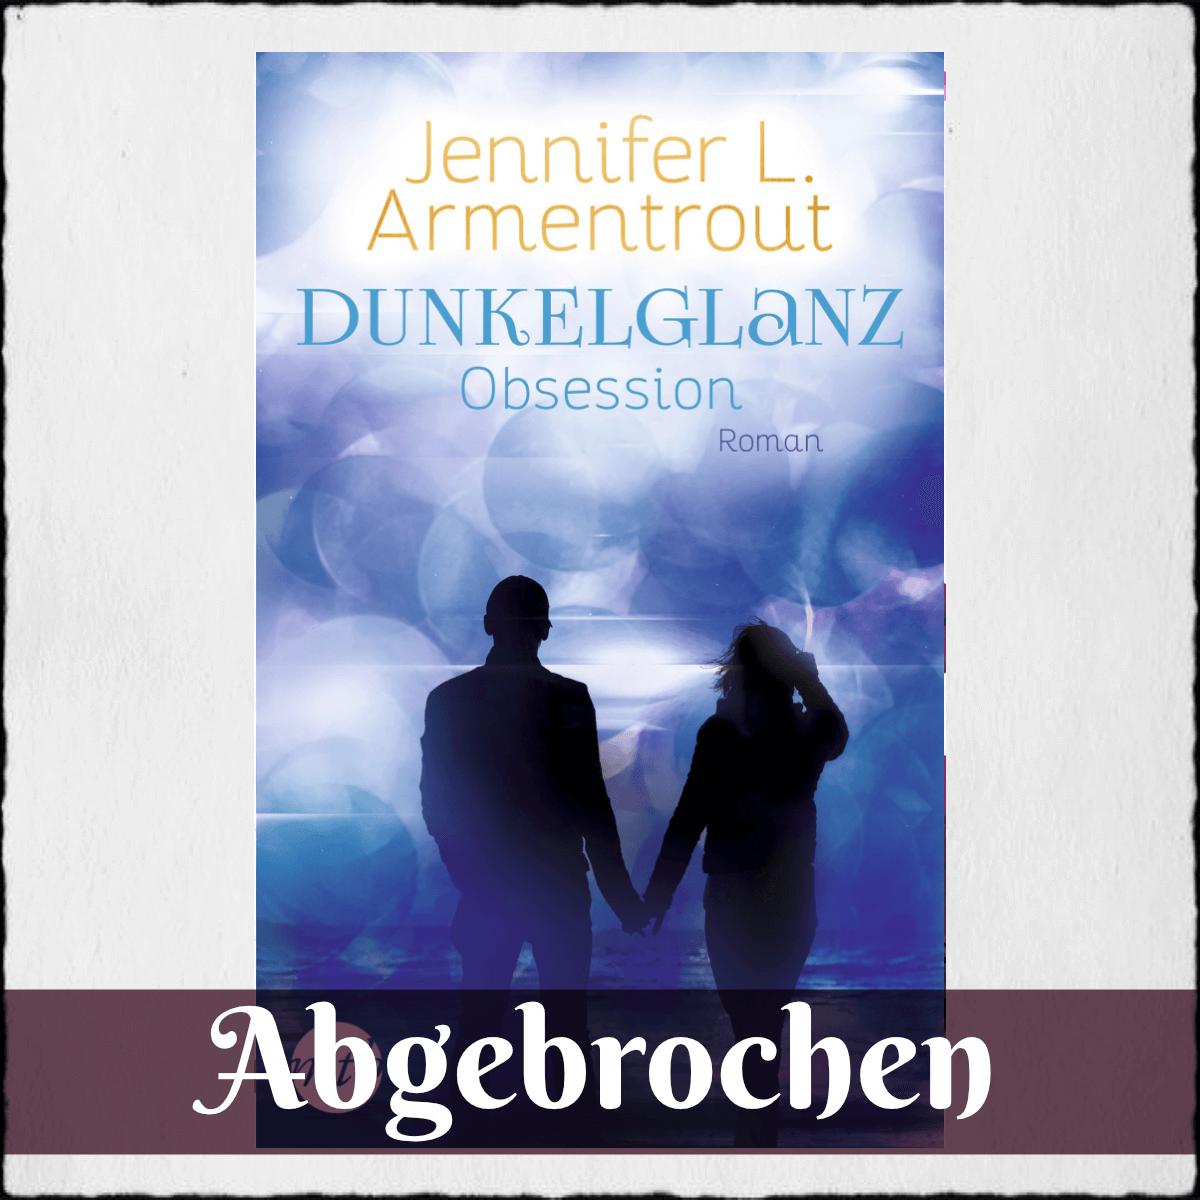 Jennifer L. Armentrout "Dunkelglanz - Obsession" © 2020 Mira Taschenbuch